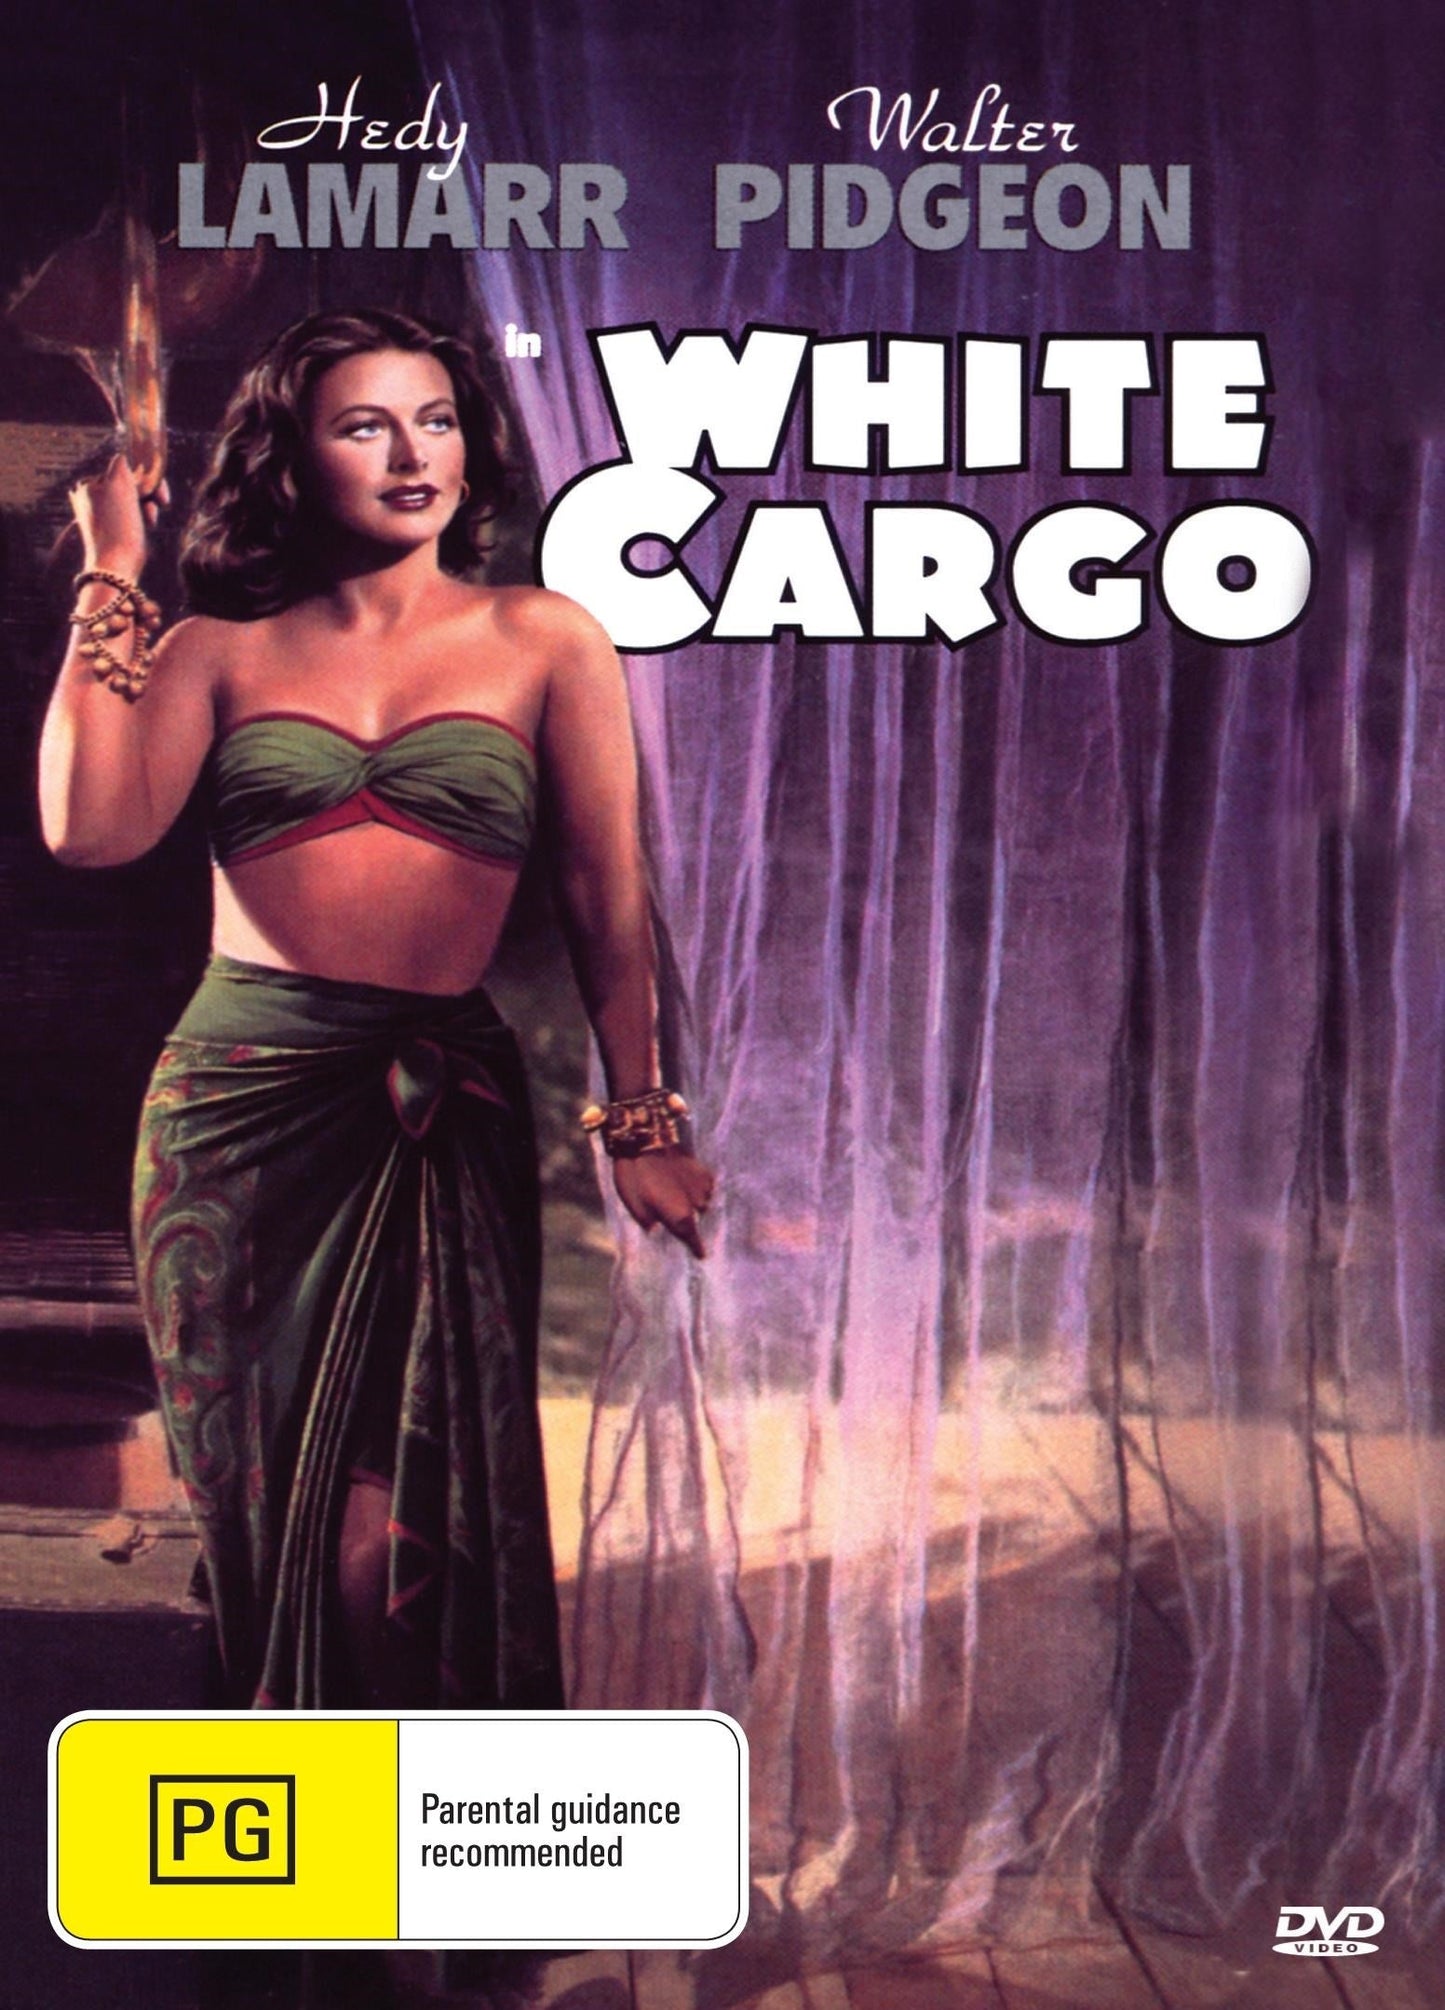 White Cargo rareandcollectibledvds